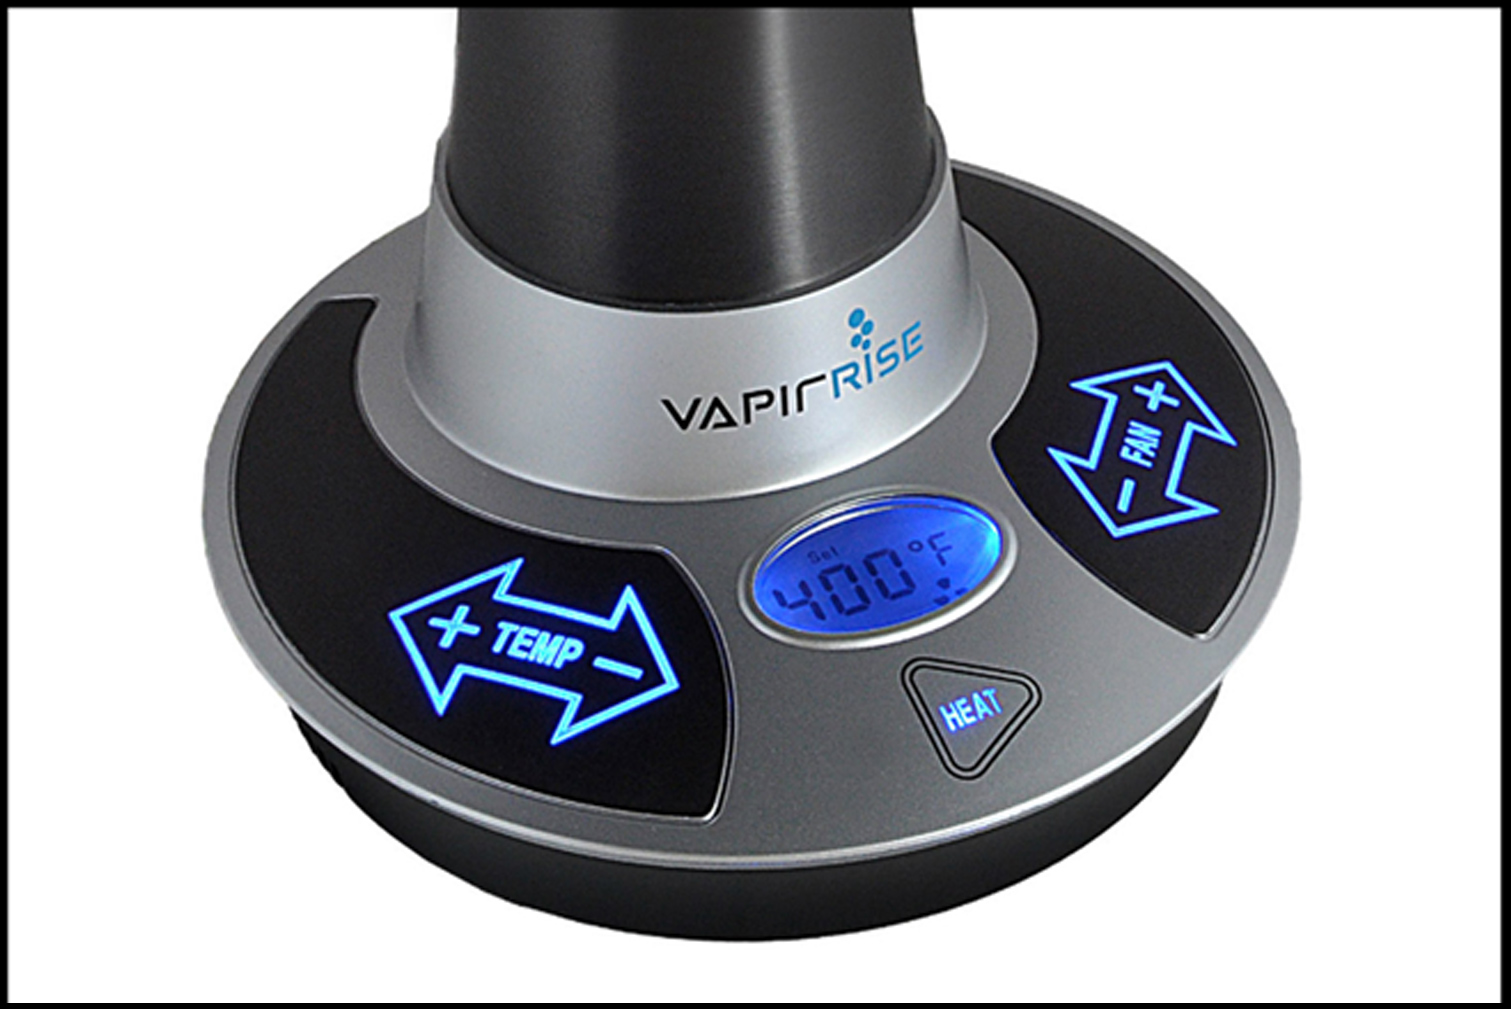 VapirRise desktop vaporizer